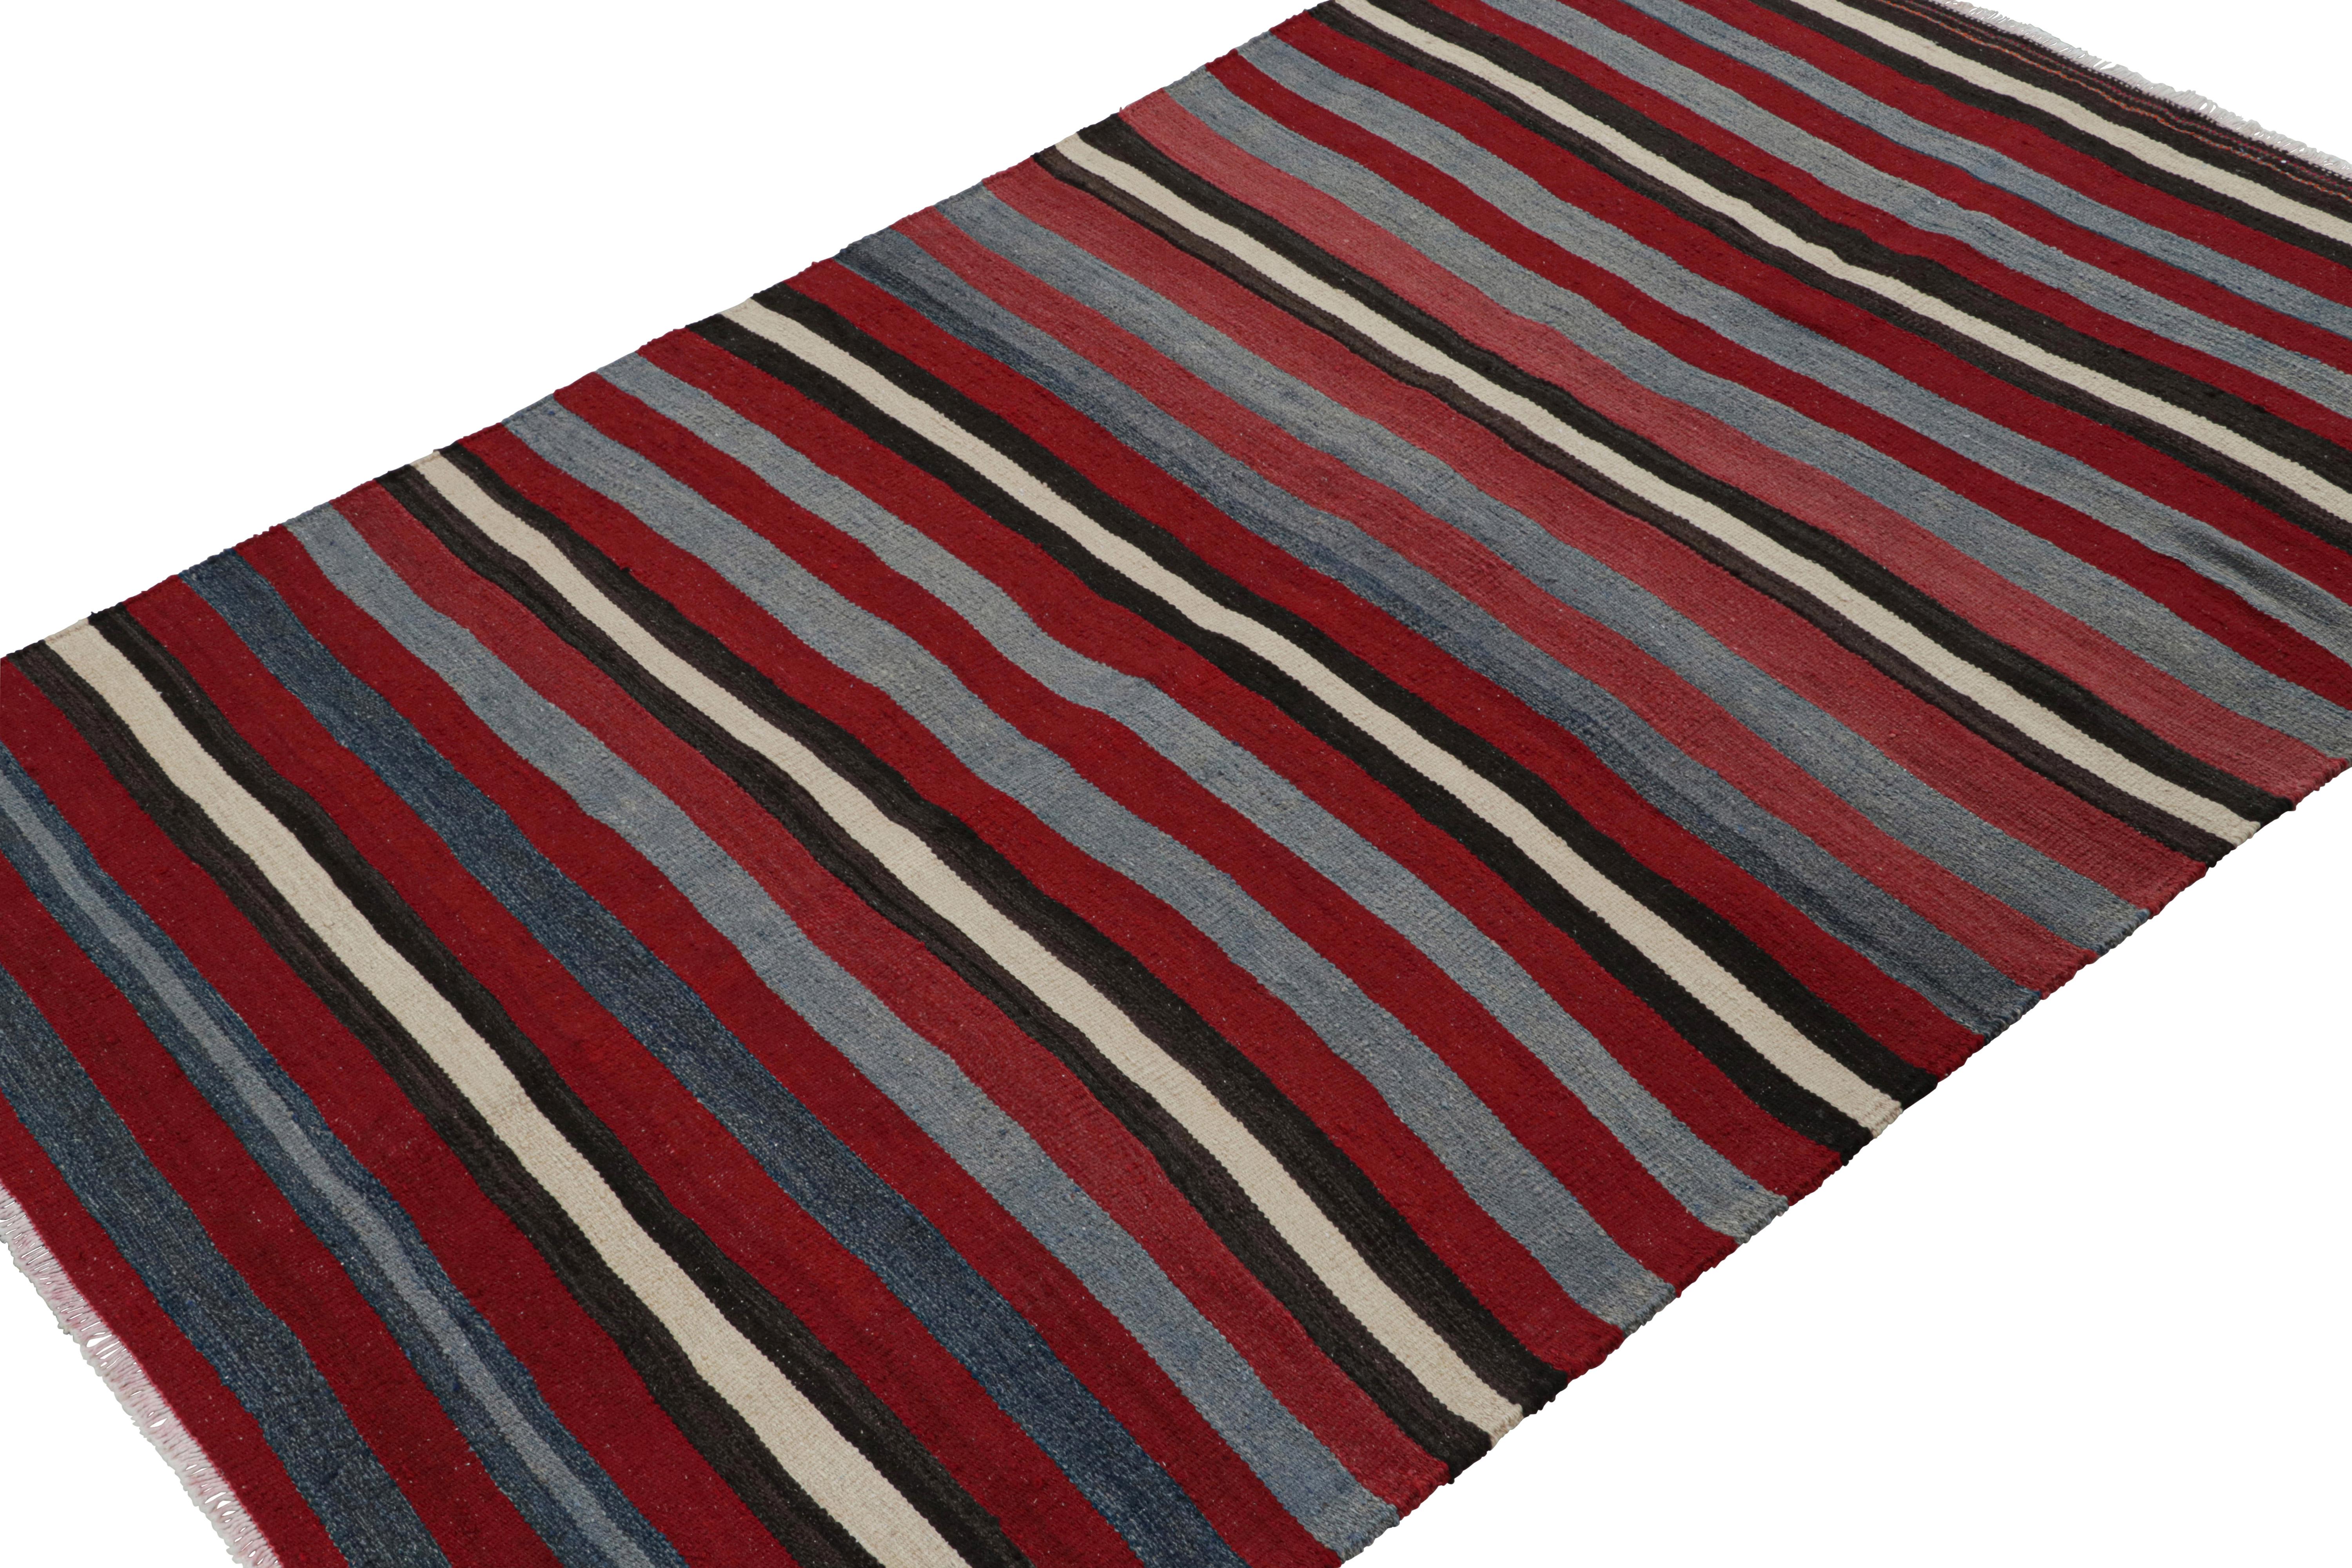 Handgewebte Wolle, ca. 1950-1960, diese 4x6 vintage  Der persische Stammes-Kilim-Teppich Shahsavan in Rot mit silbergrauen und blauen Streifen ist eine spannende Ergänzung der Rug & Kilim-Kollektion. 

Über das Design: 

Die persischen